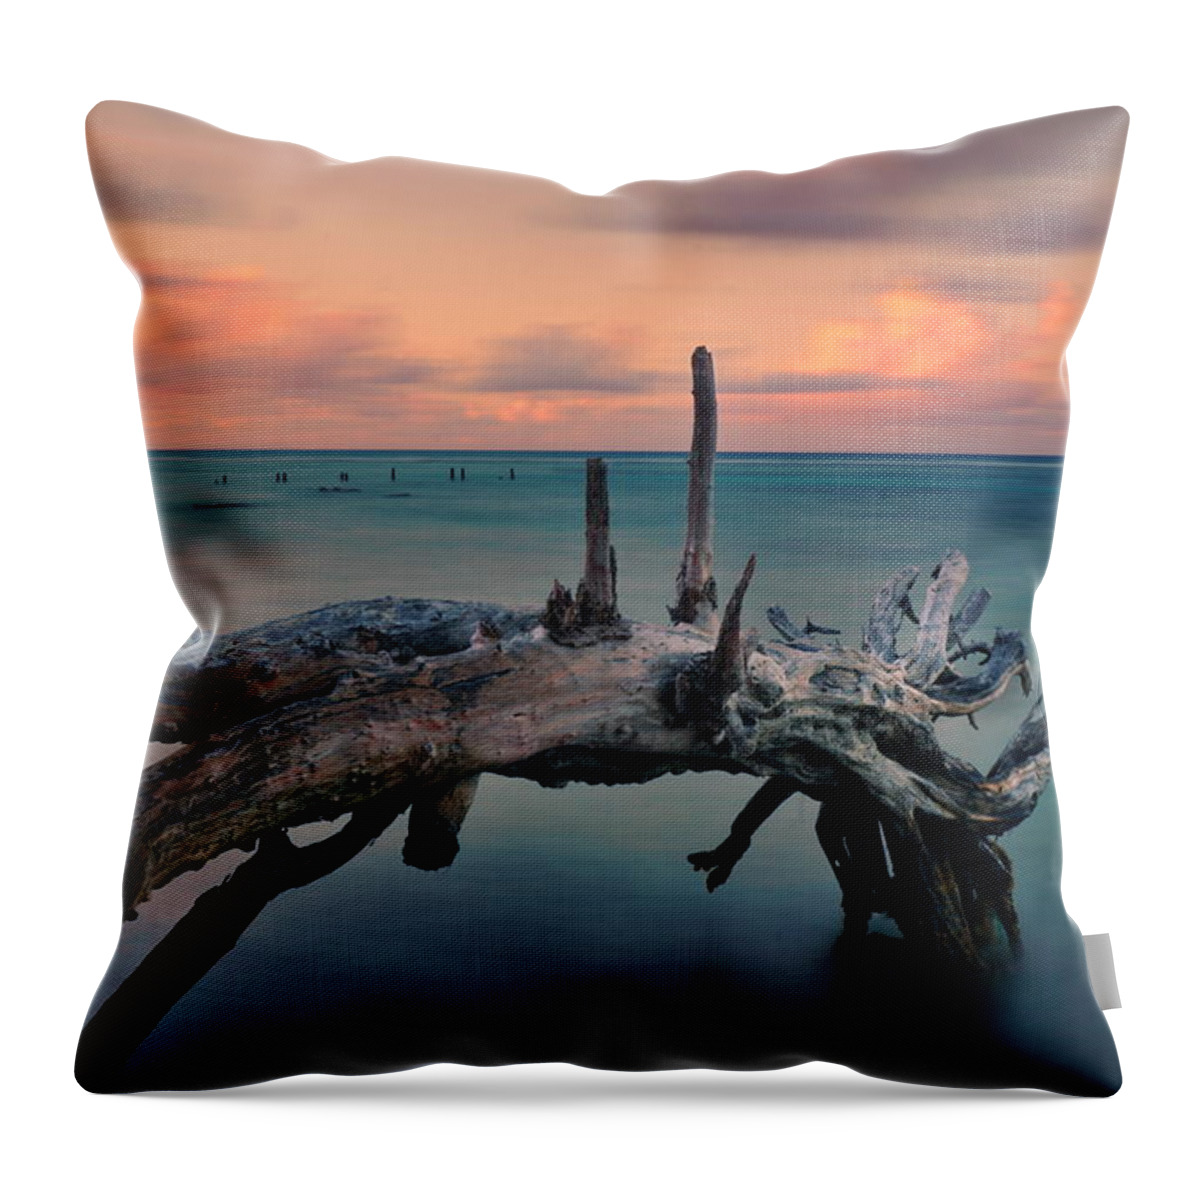 Ocean Throw Pillow featuring the photograph Driftwood by Amanda Jones